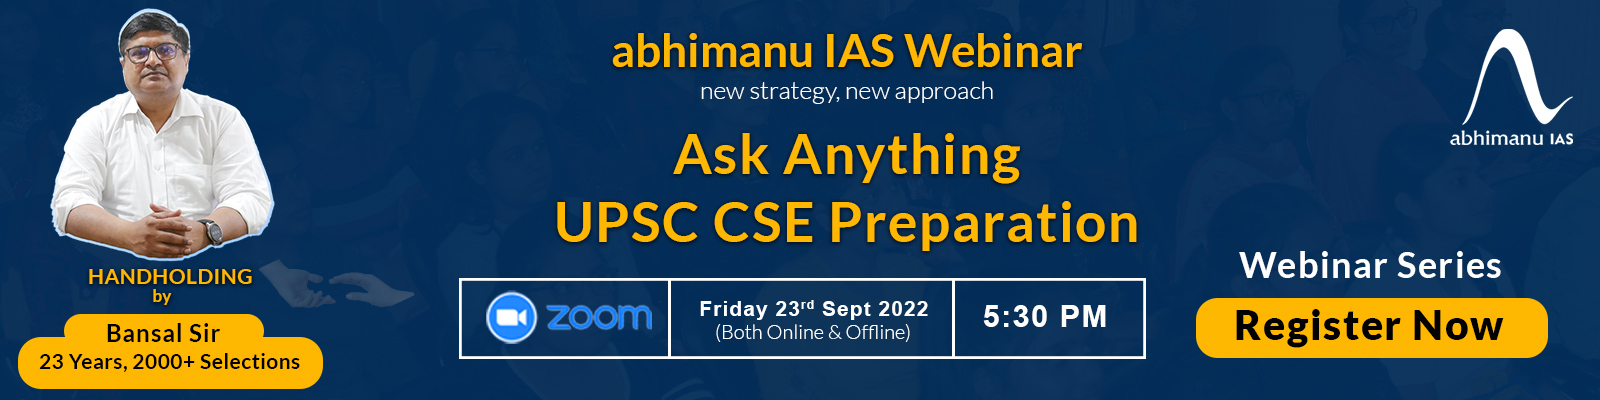 Ask Anything Regarding UPSC CSE Preparation